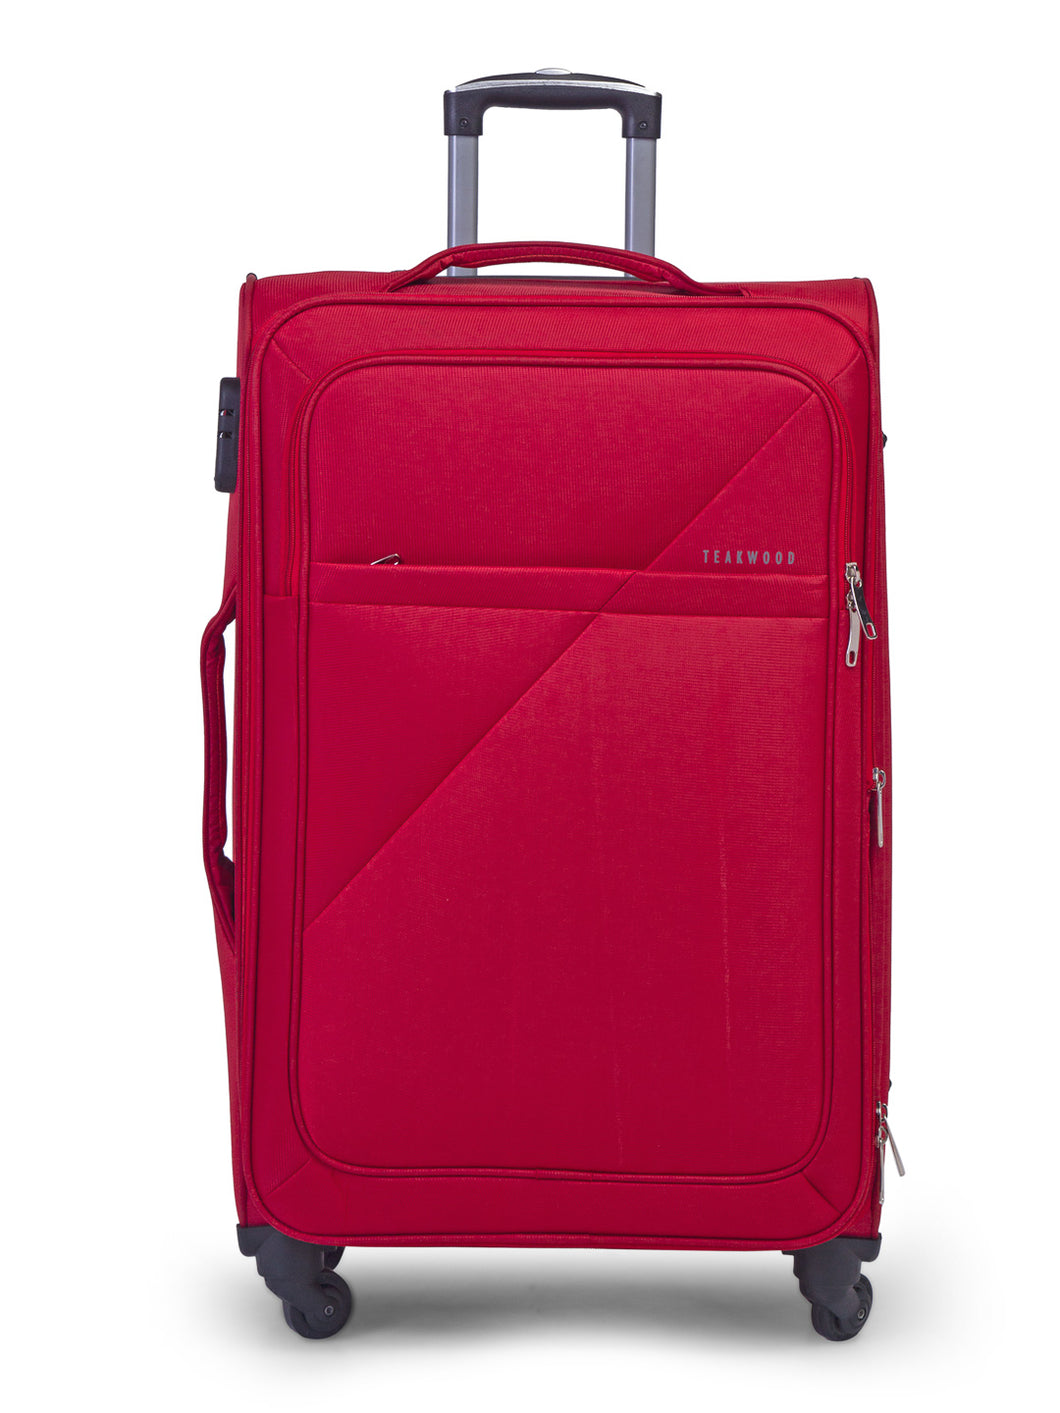 Teakwood Red Soft Sided Trolley Bag (Medium)